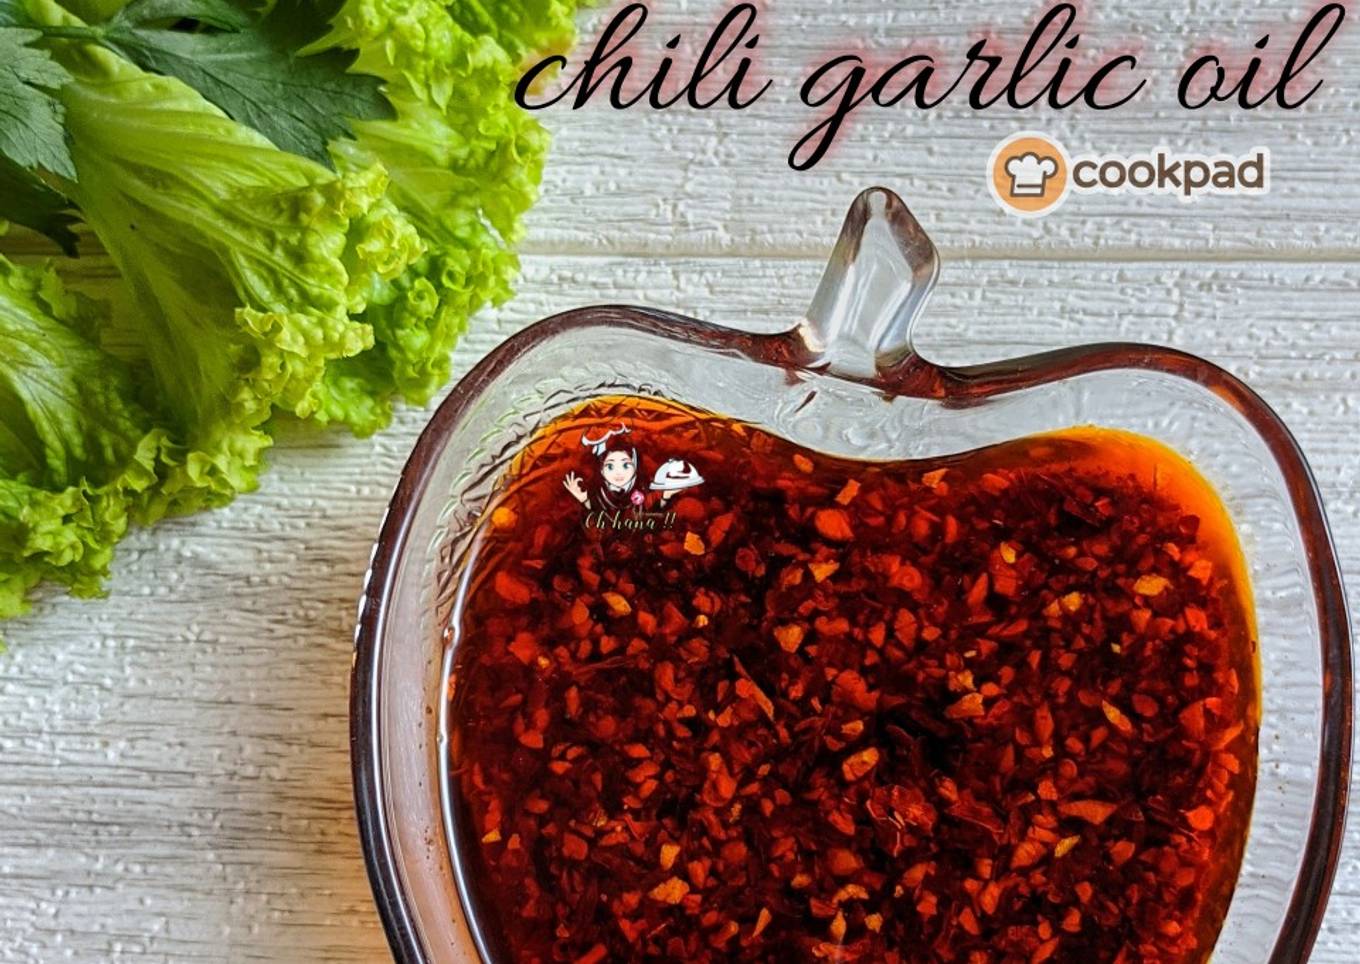 Resepi Chili garlic oil yang Menggugah Selera dan Easy